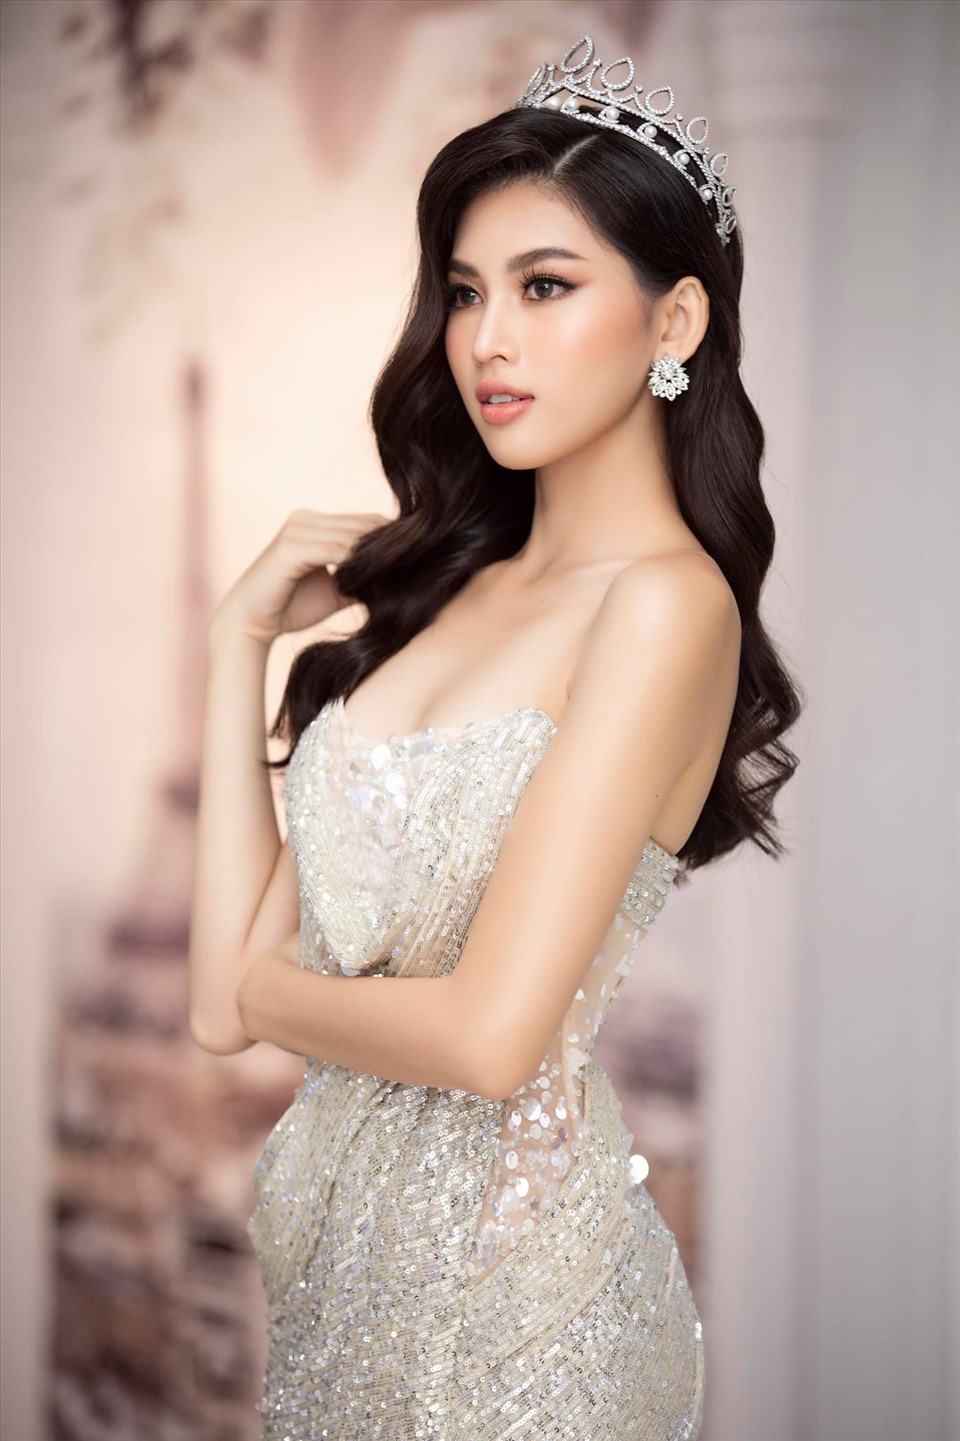 Bởi vậy, Á hậu sinh năm 2000 chính thức trở thành đại diện Việt Nam Miss Grand International đã nhận được nhiều sự kỳ vọng từ khán giả. Ảnh: SV.